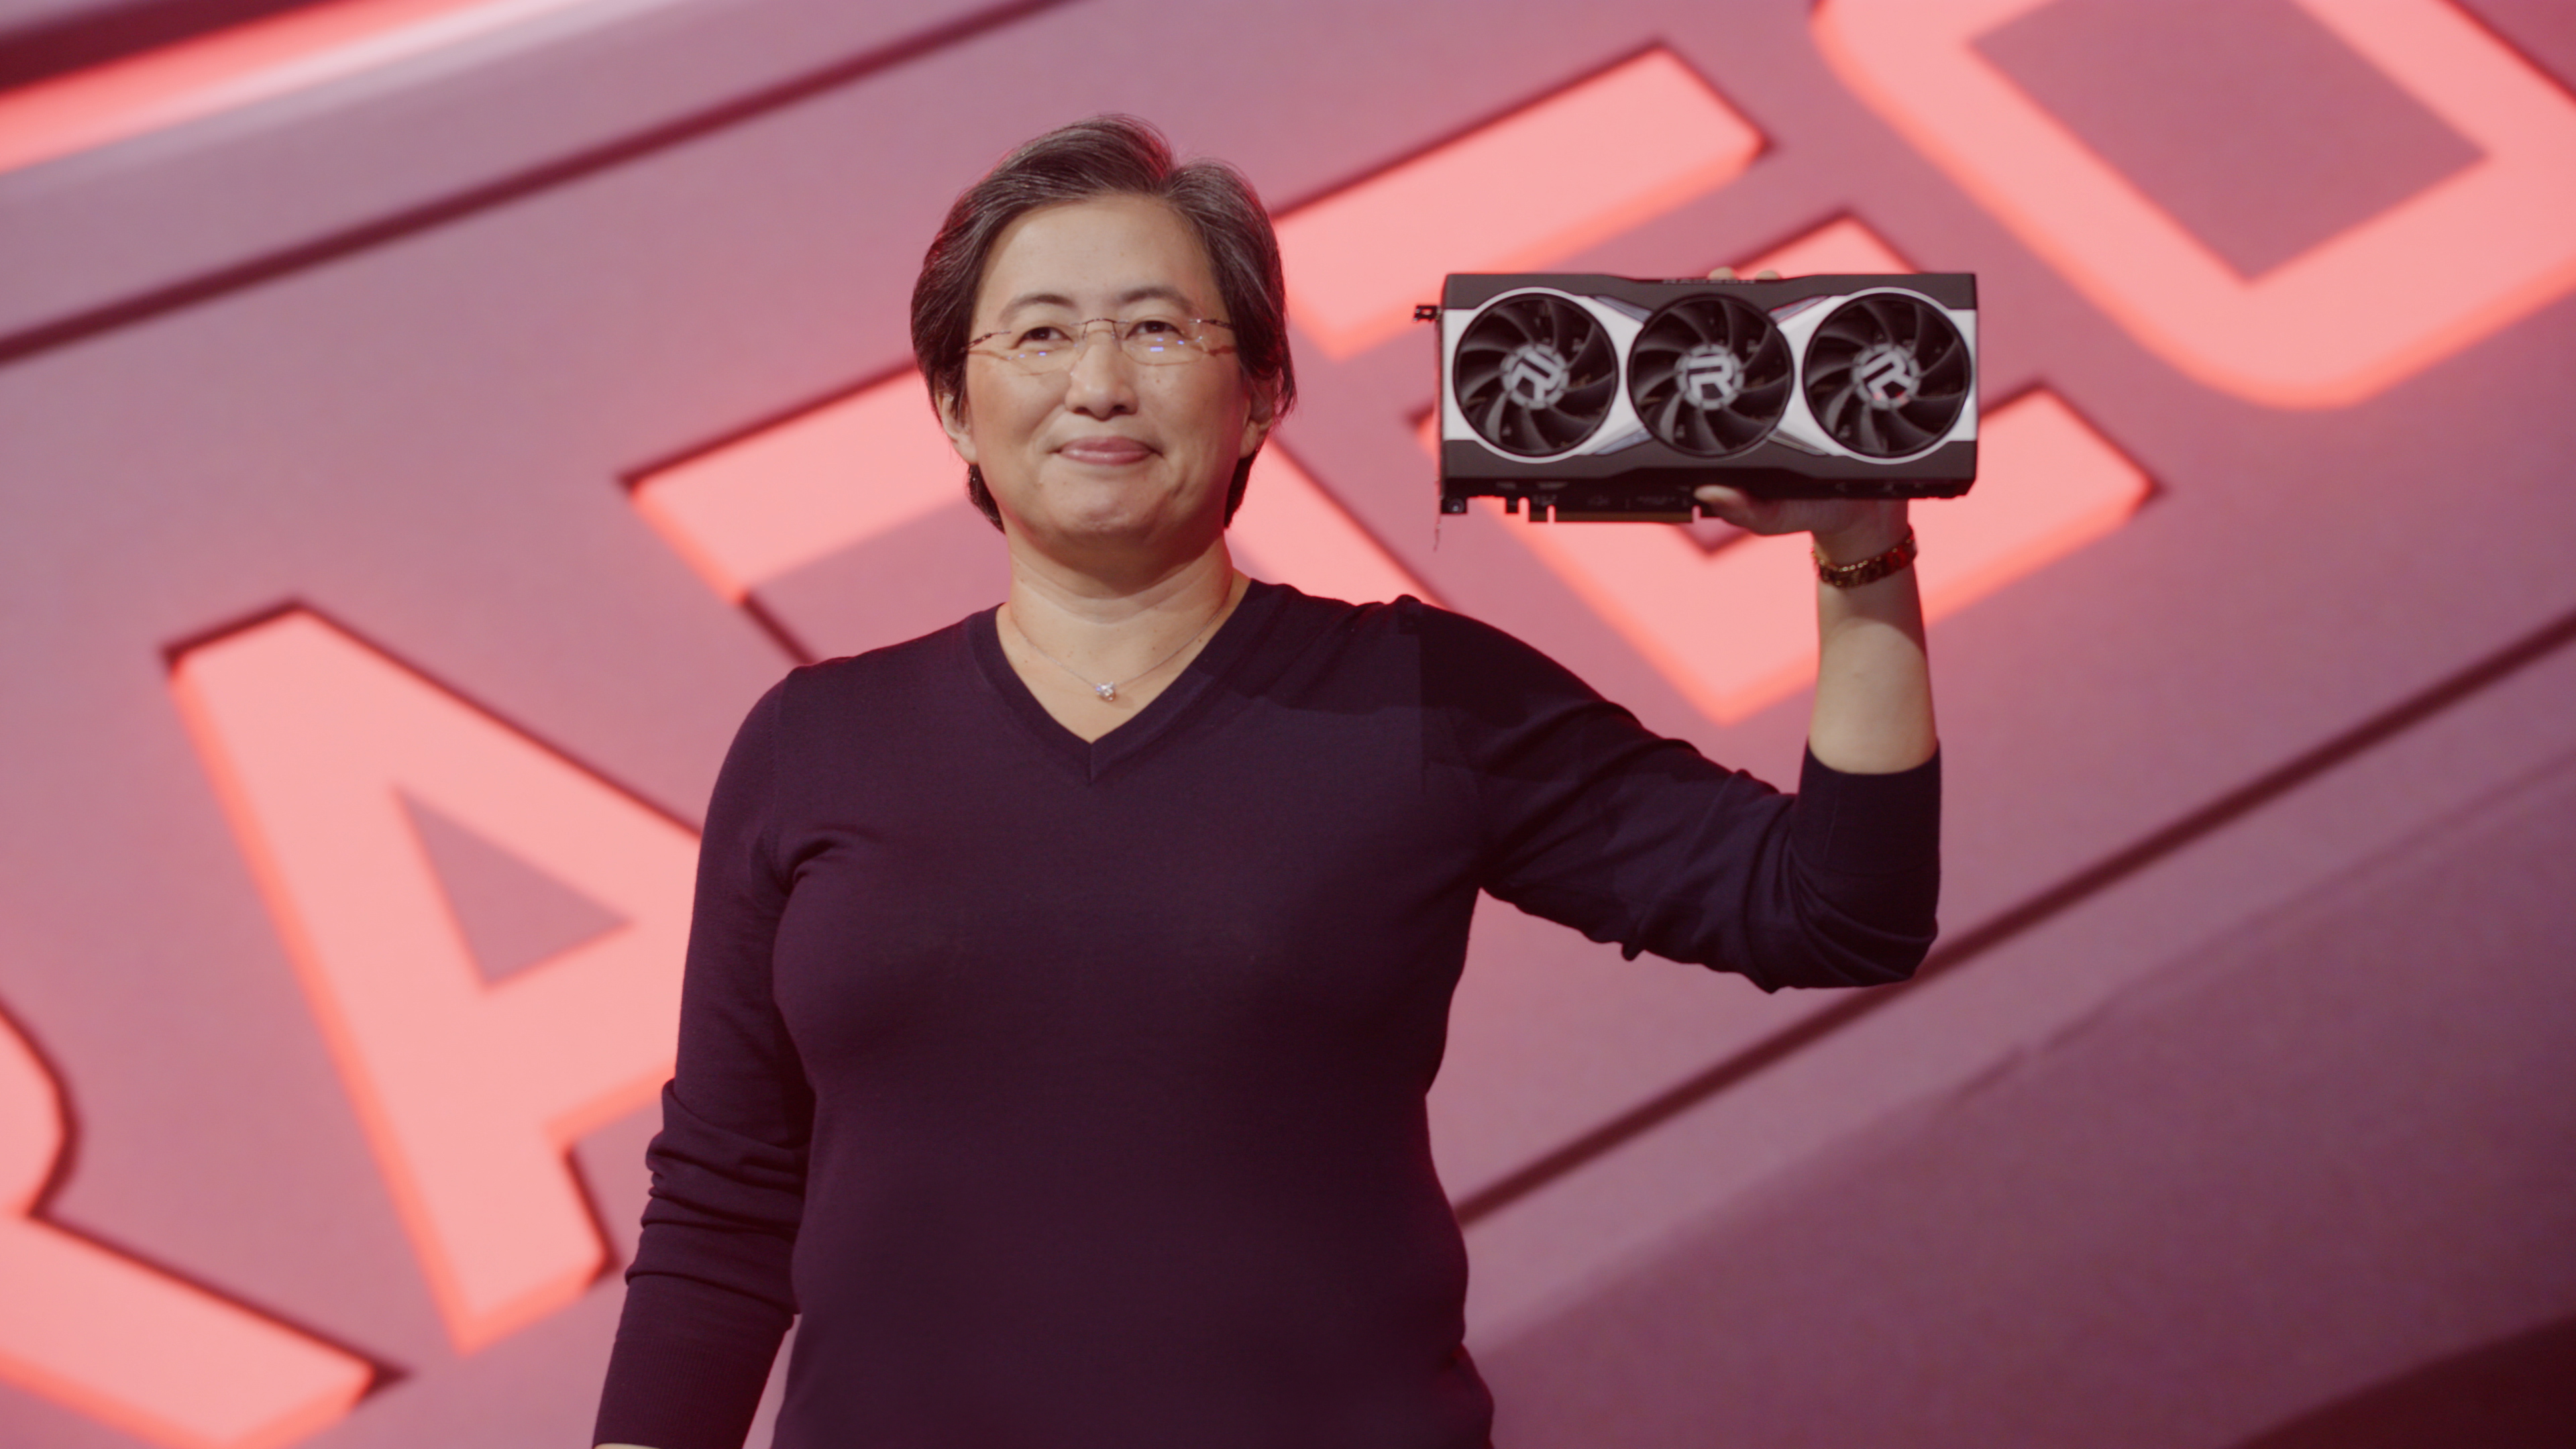 AMD : les caractéristiques des Radeon RX 6000 fuitent, une semaine avant leur présentation